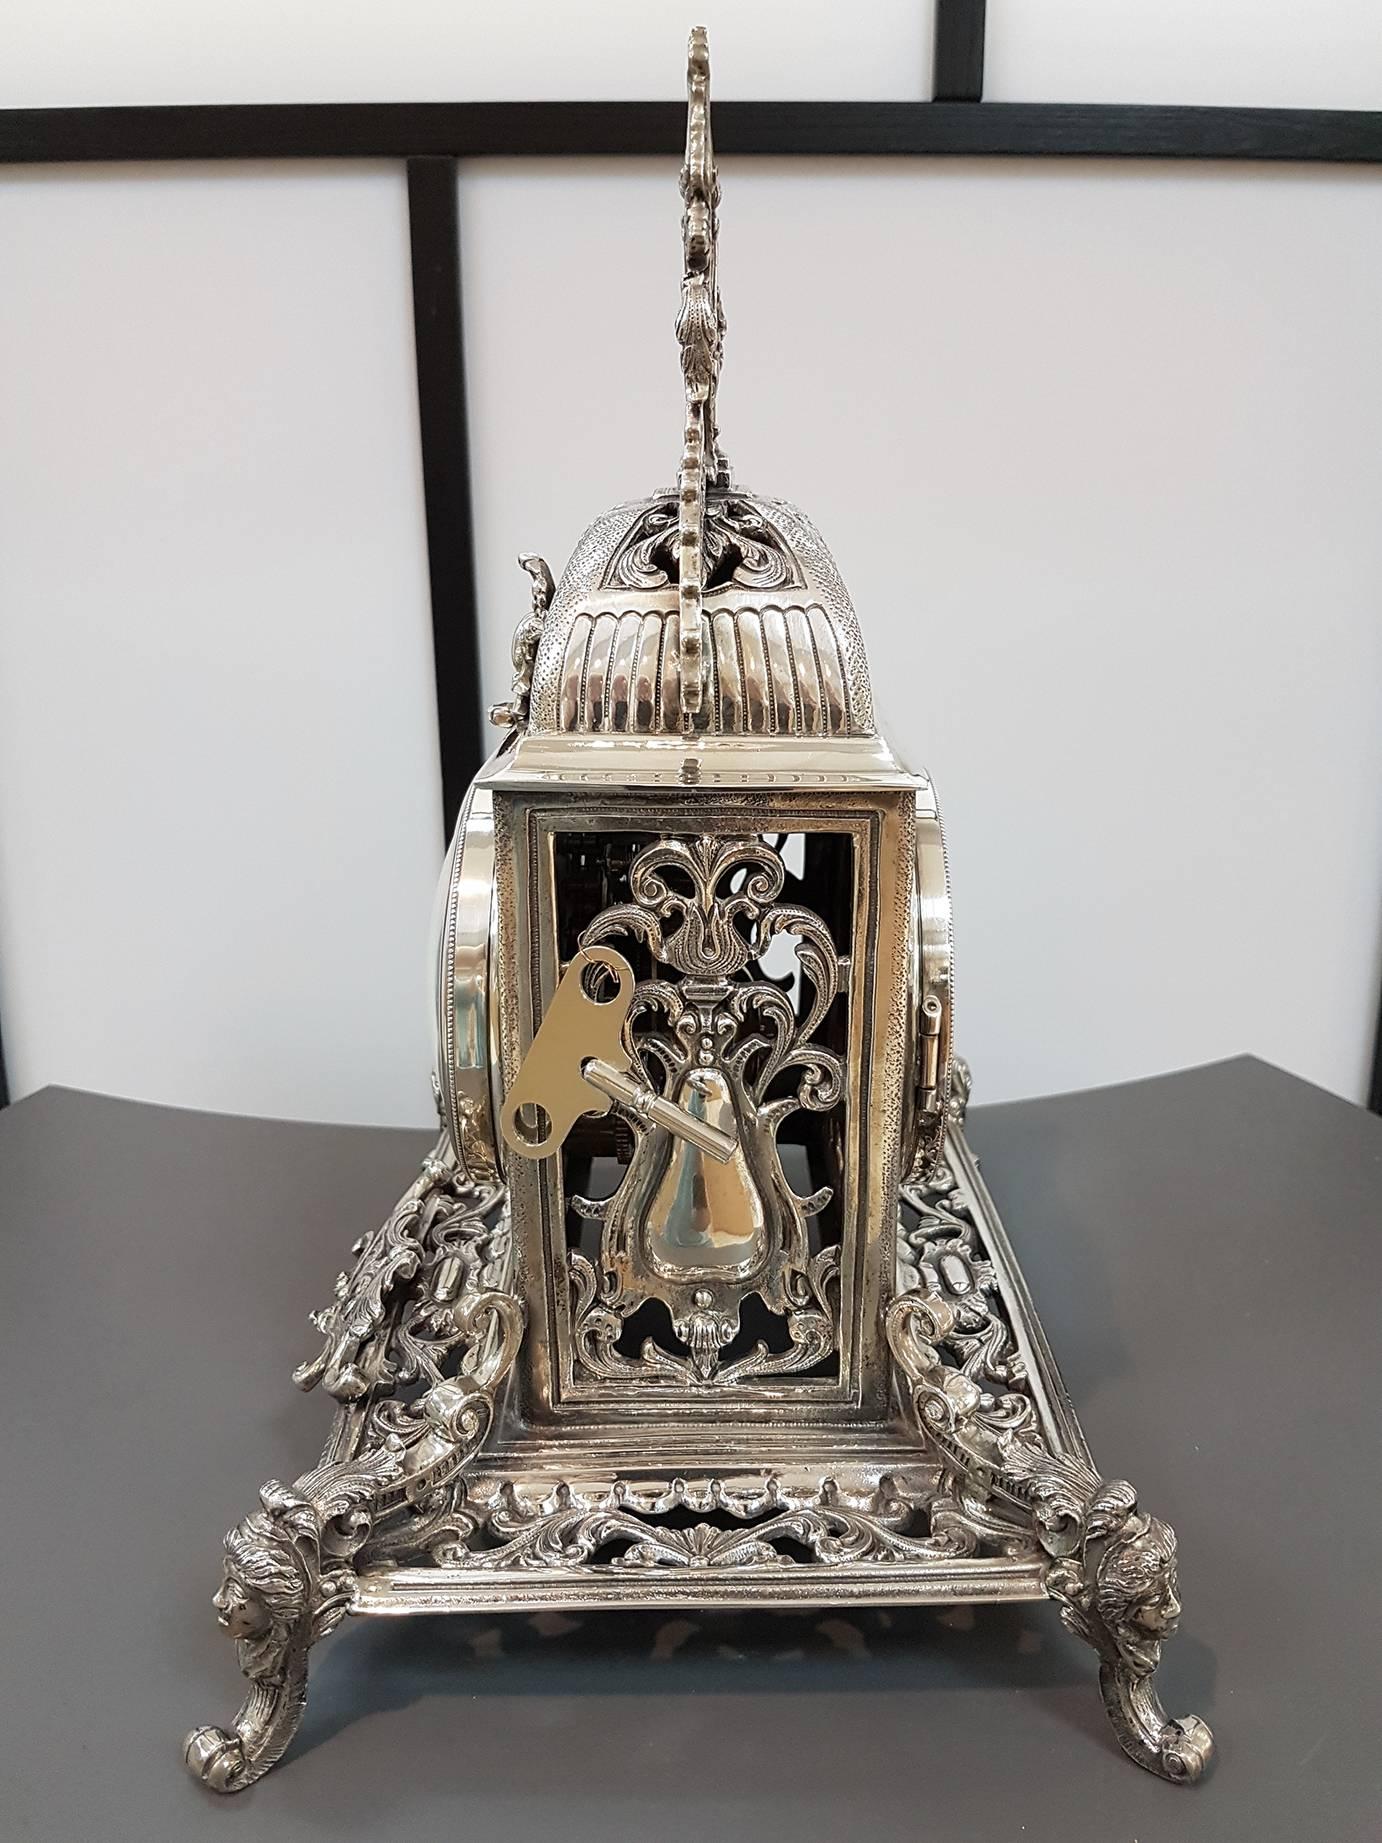 Pendule de table néo-gothique en argent massif 800. L'horloge a été réalisée par moulage et ciselage.
Mécanisme mécanique
